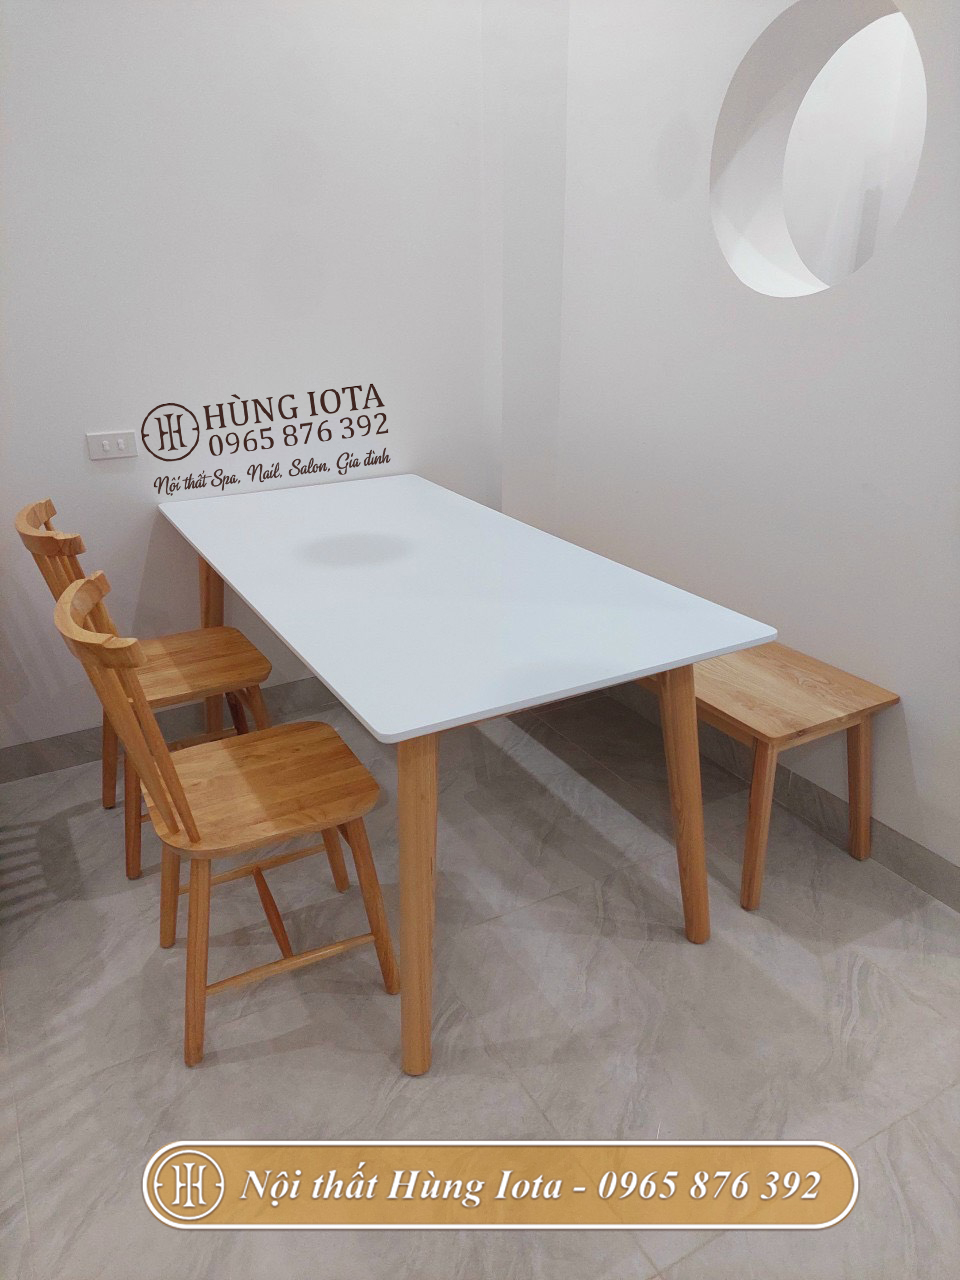 Lắp đặt bộ bàn ghế ăn gia đình Pinnstol hiện đại màu gỗ